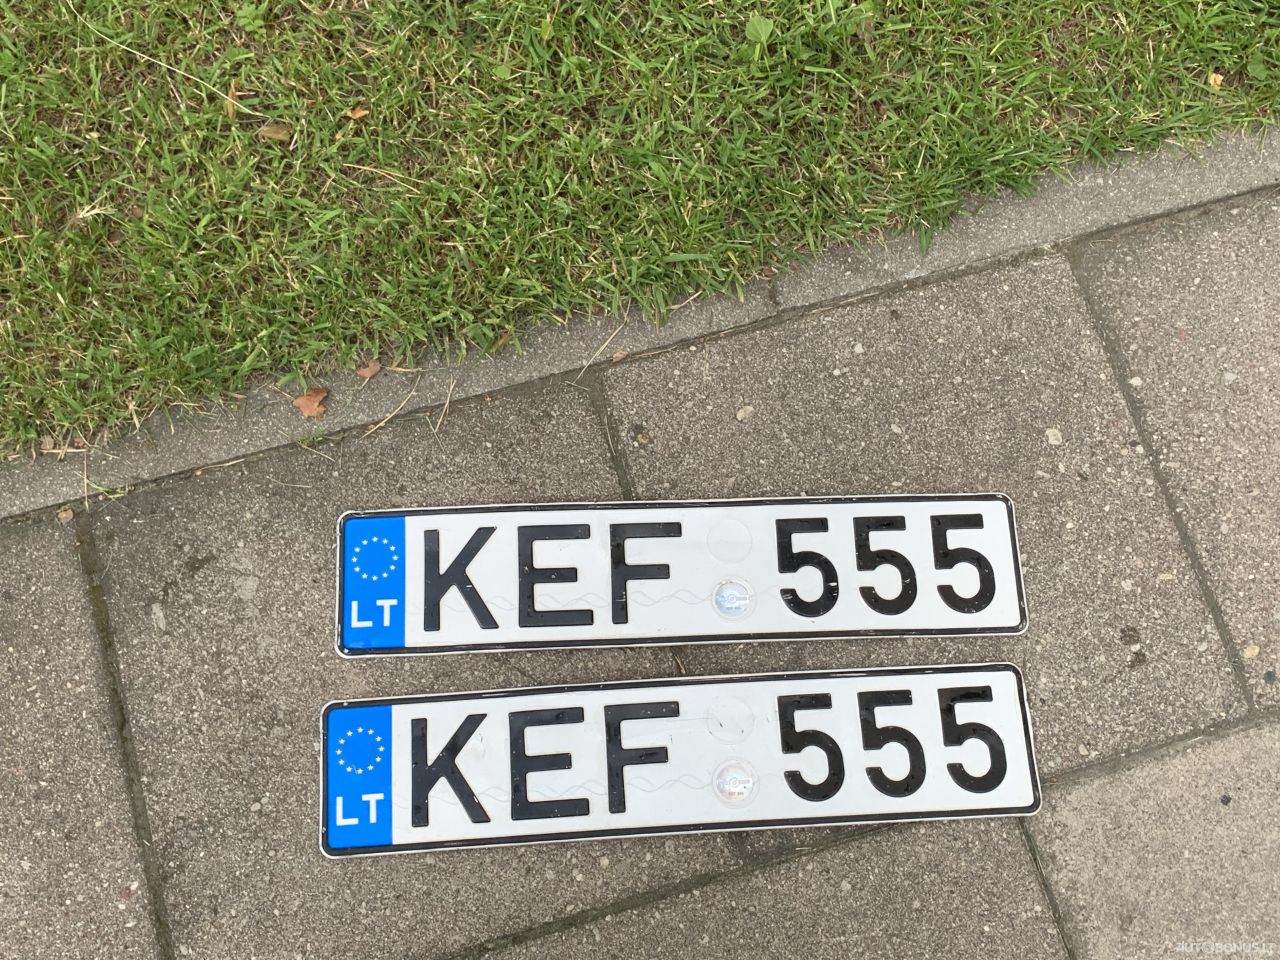  KEF555